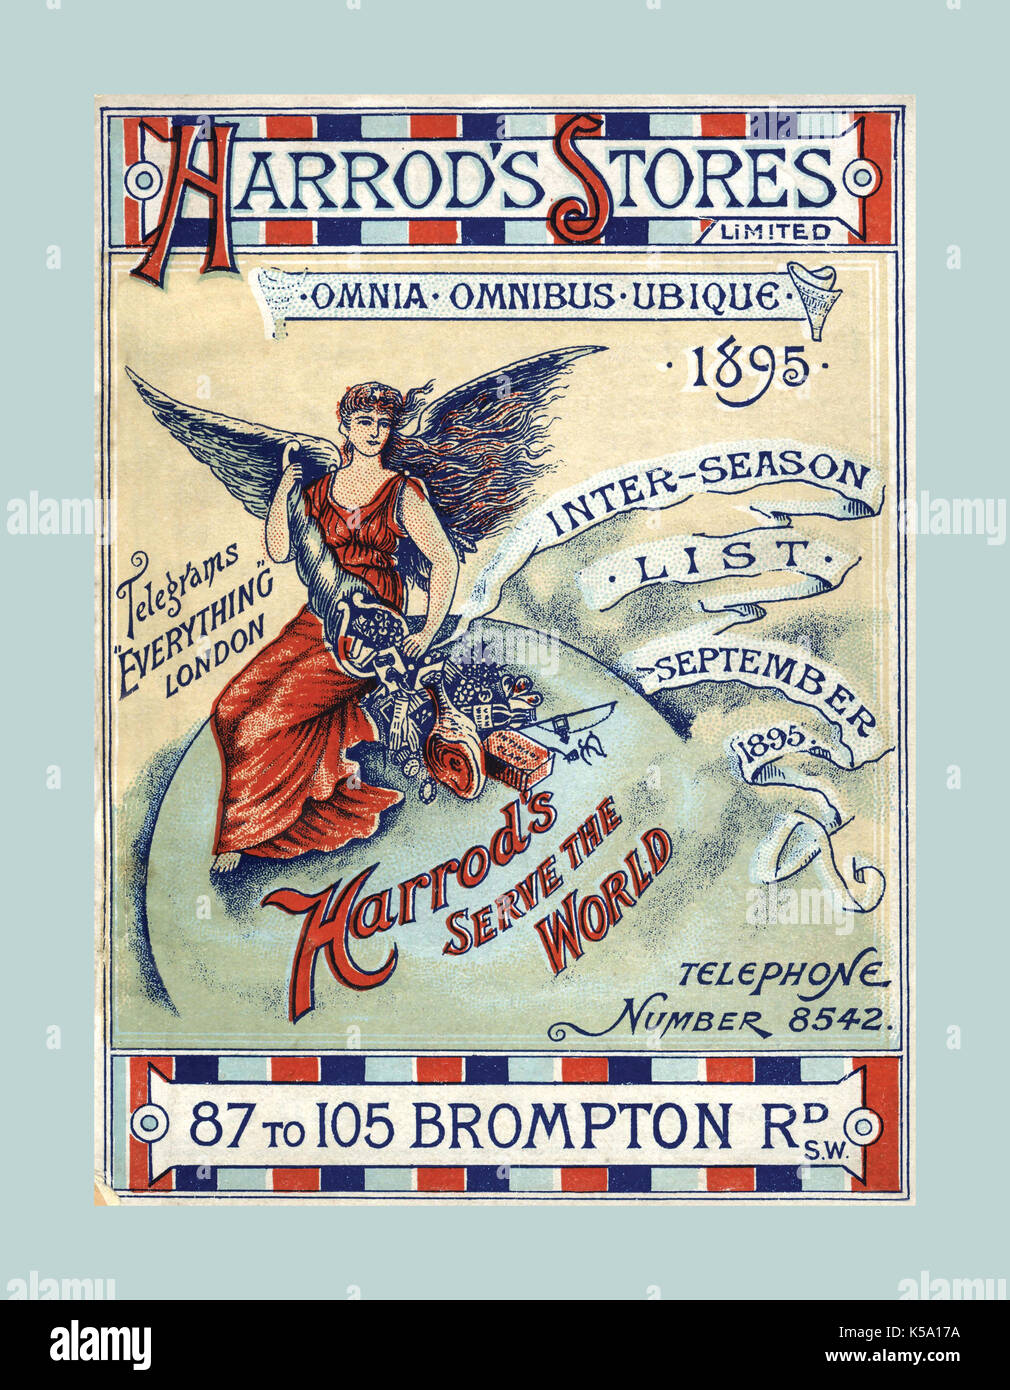 VINTAGE 1895 INTER-magasins Harrods LISTE DE PRIX SAISON POSTER 'Harrods dessert le monde entier' Brompton Road Londres SW1 Banque D'Images